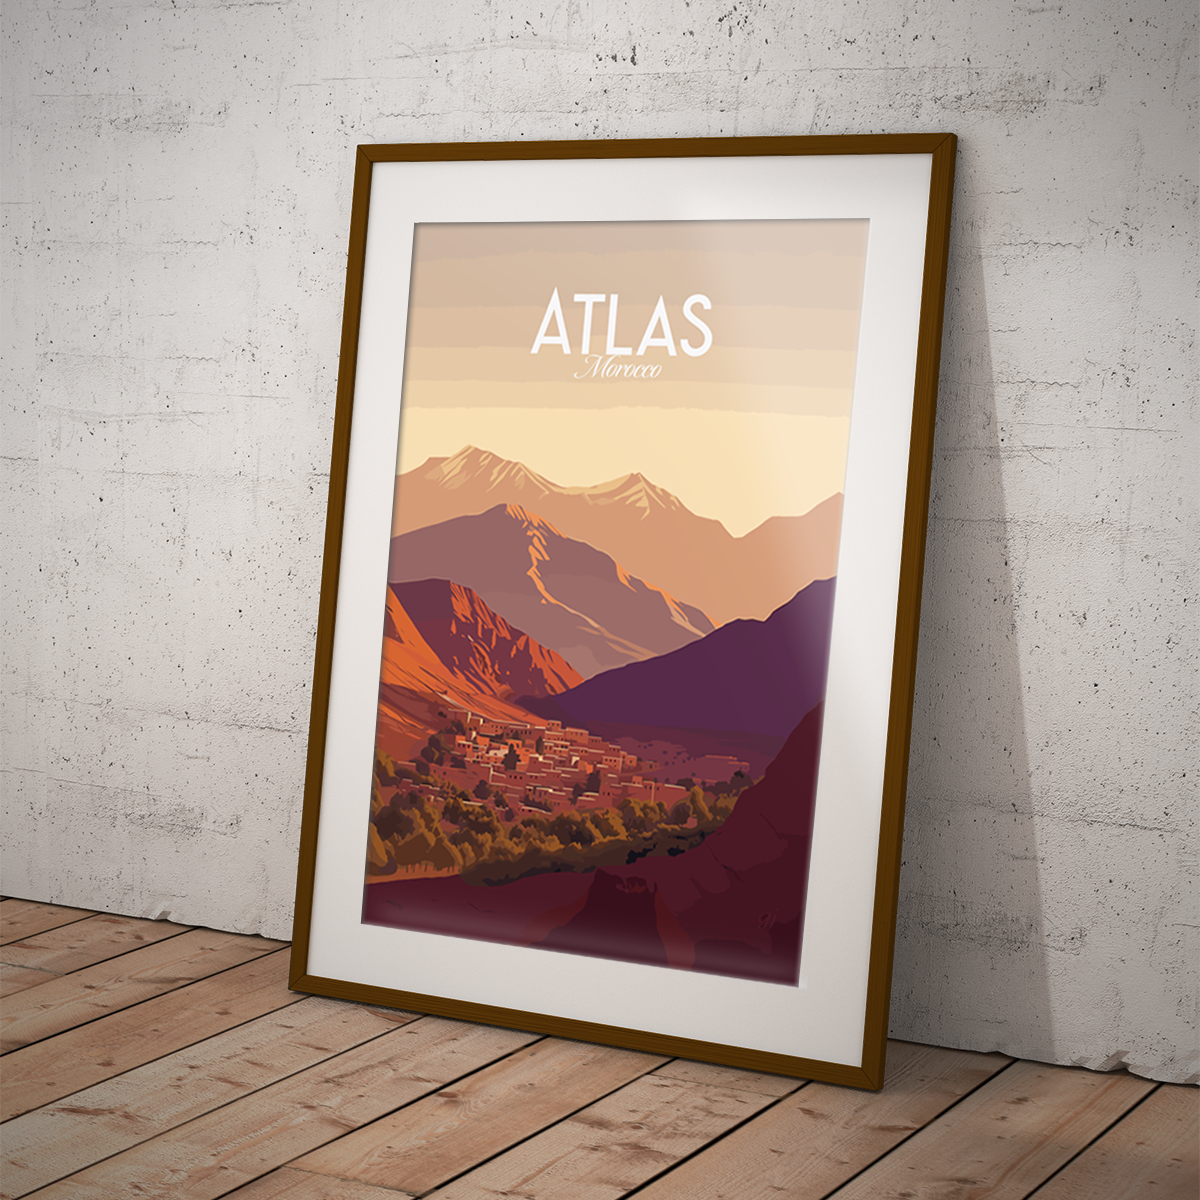 Atlas poster by bon voyage design